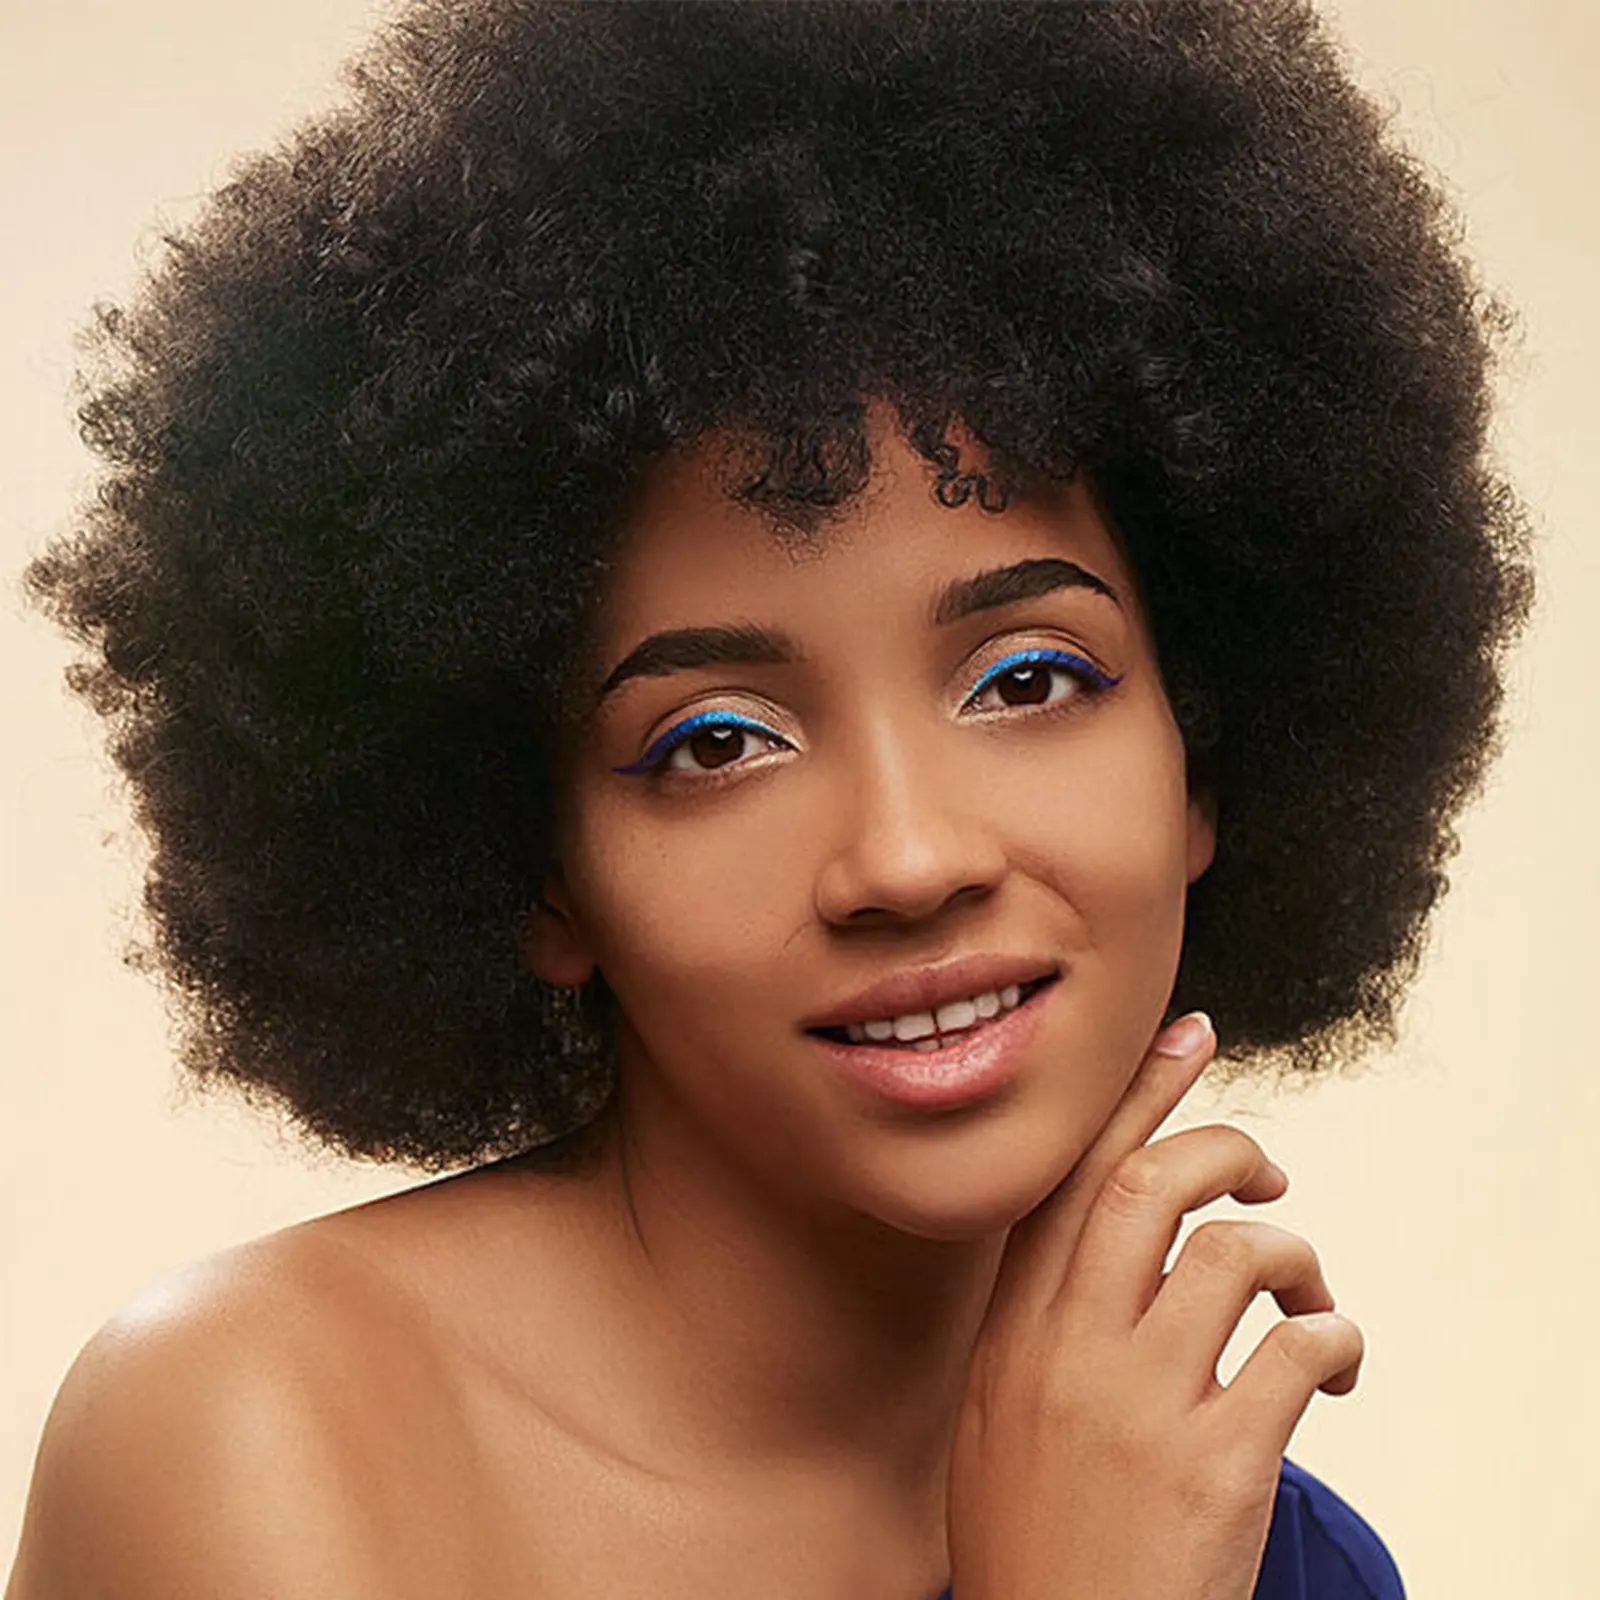 G & T Perruque des années 70 Afro Hair pour femmes noires Perruques afro bouffantes et douces à l'aspect naturel Perruques complètes pour la fête quotidienne Costume Cosplay